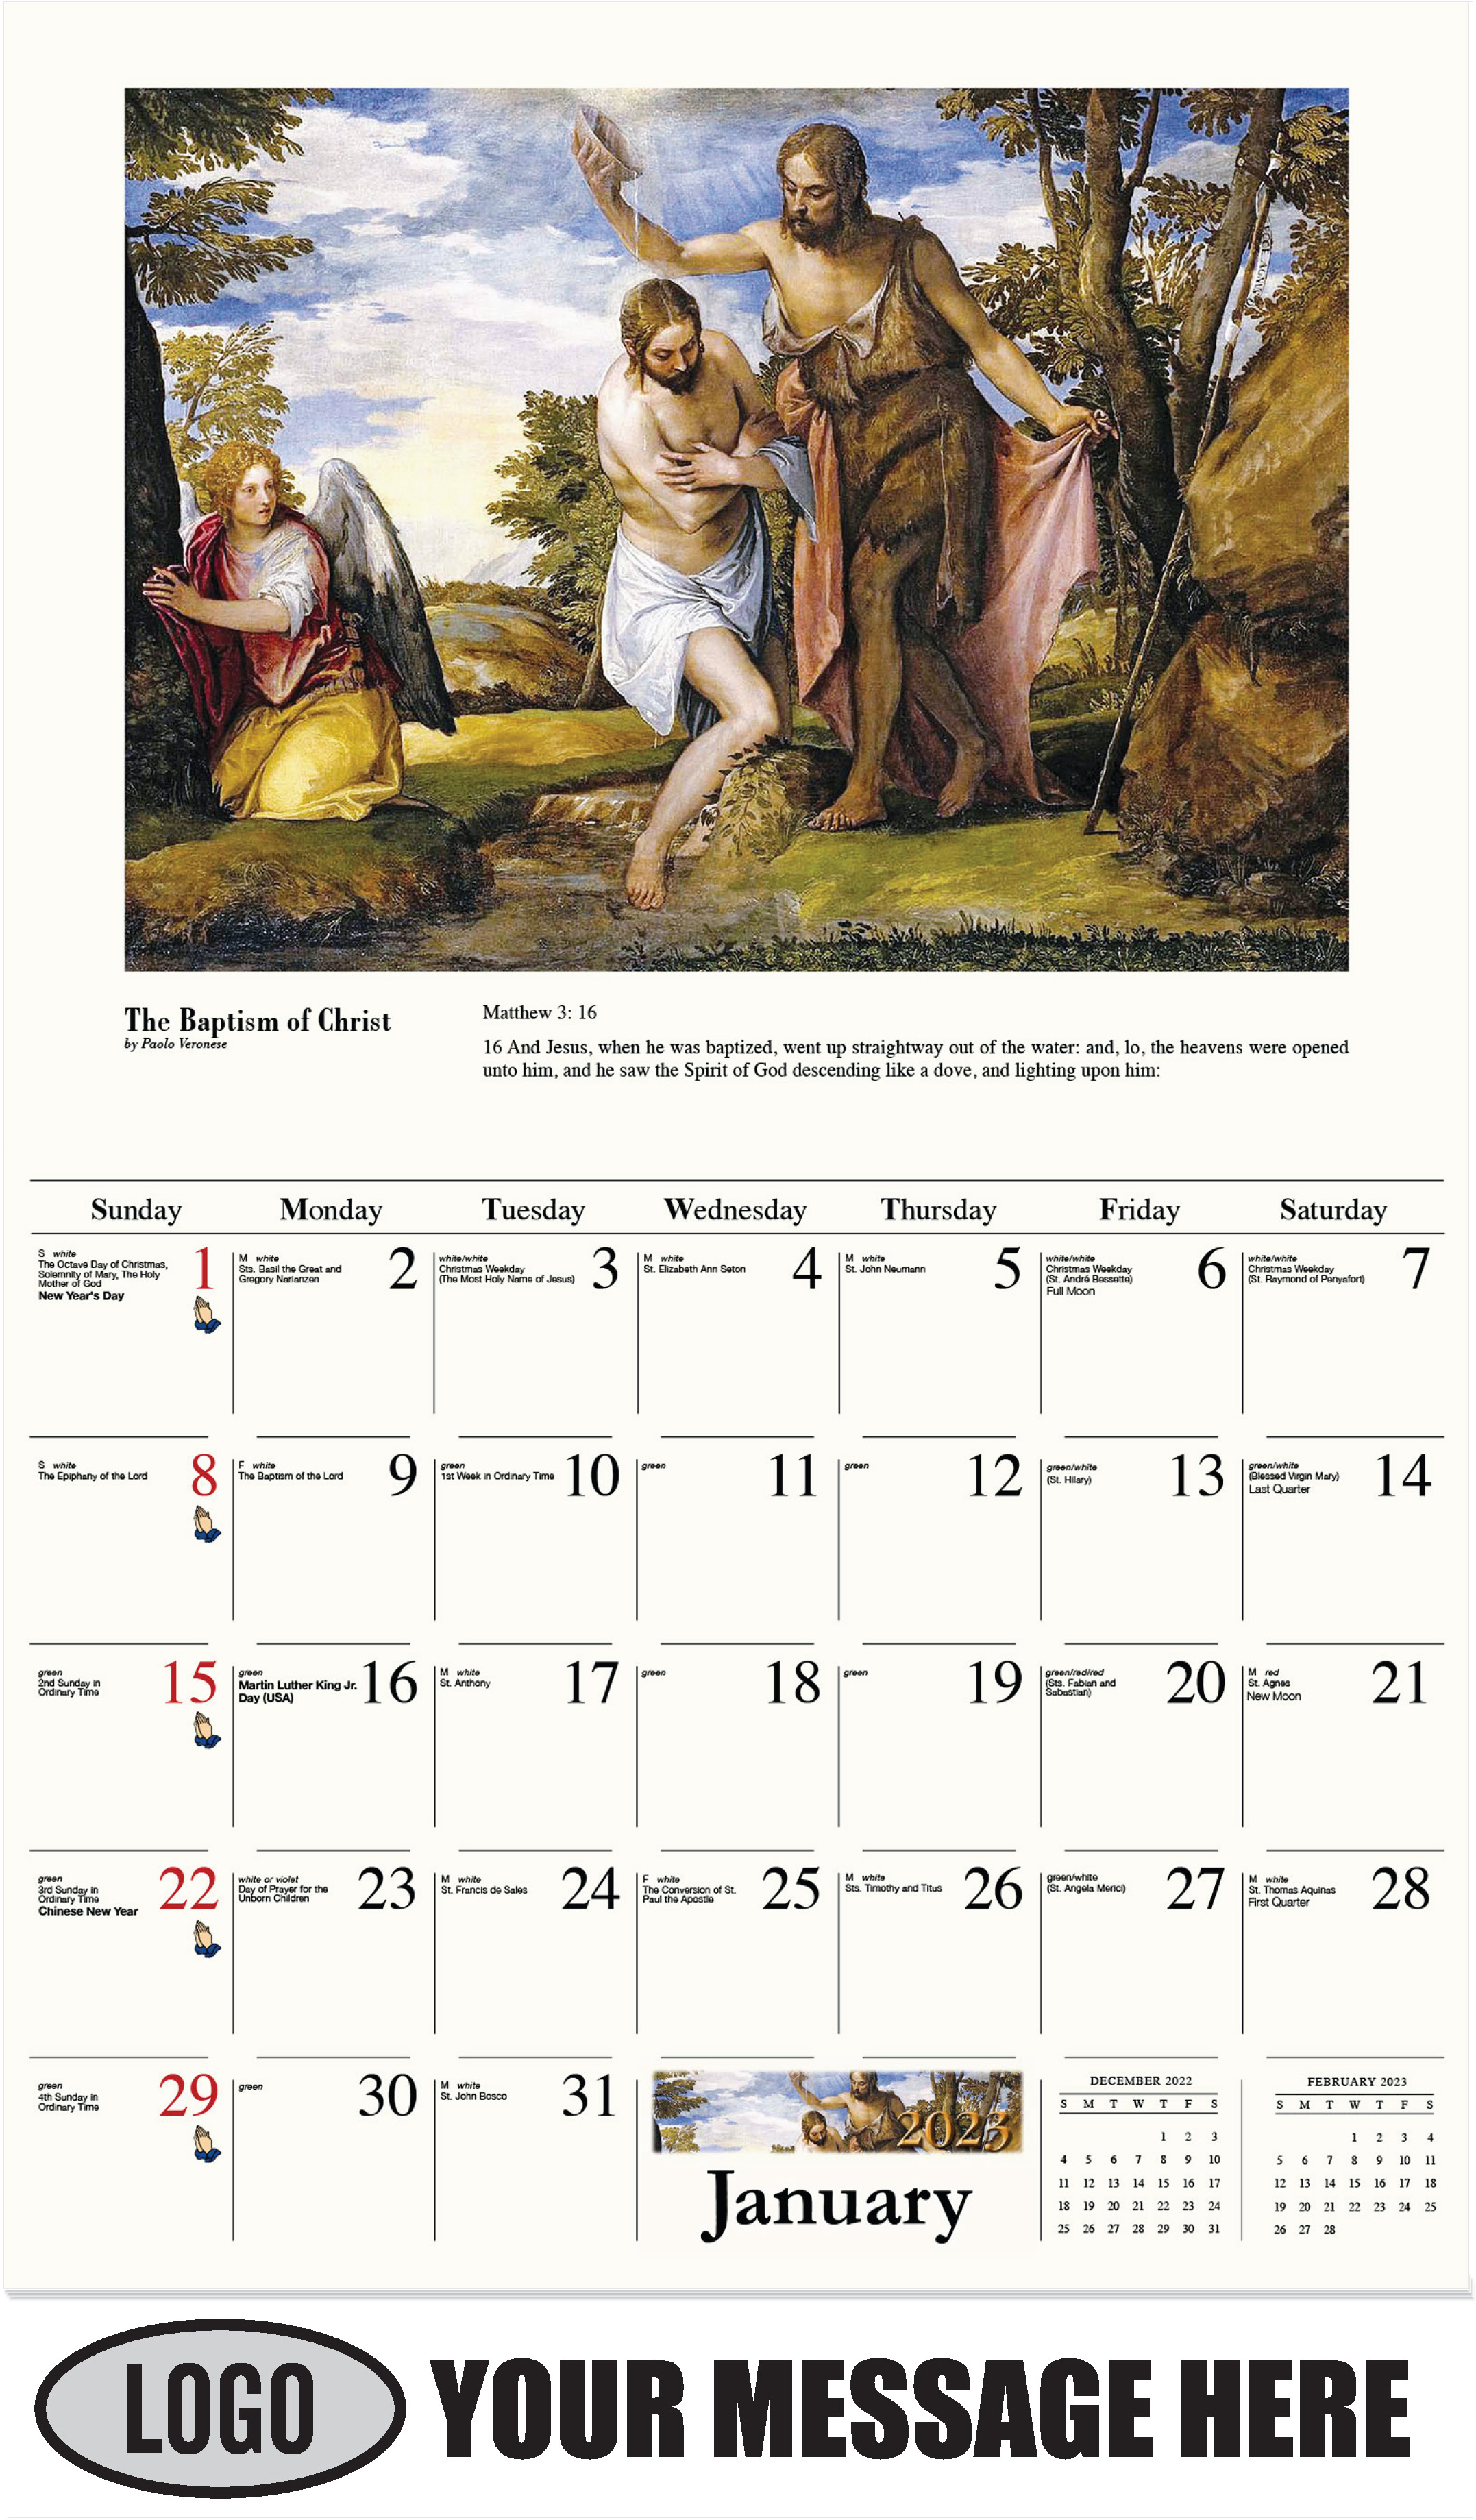 January - Catholic Inspiration 2023 Promotional Calendar